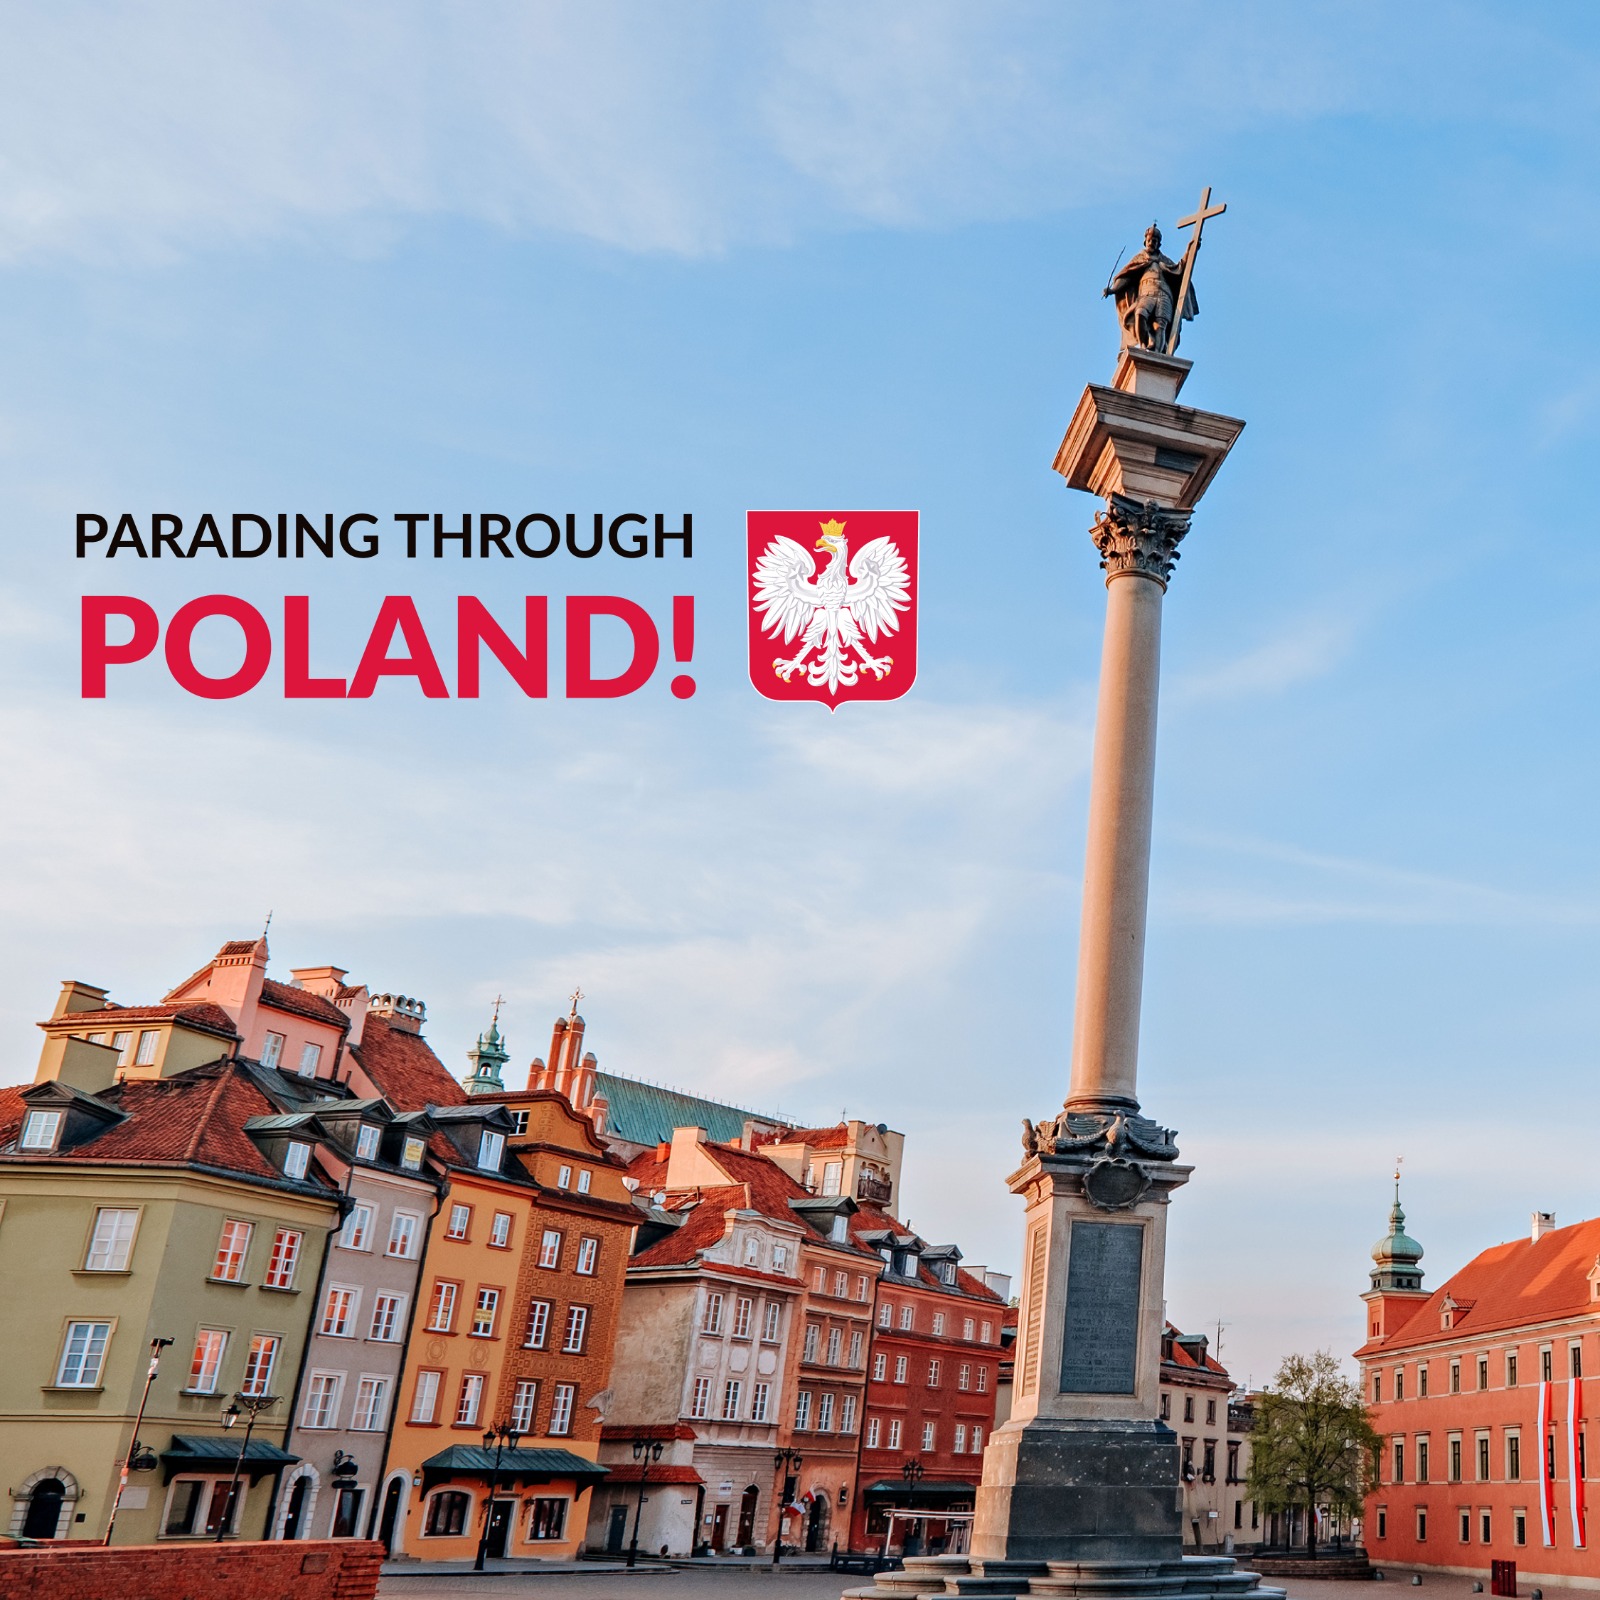 Parading through Poland!